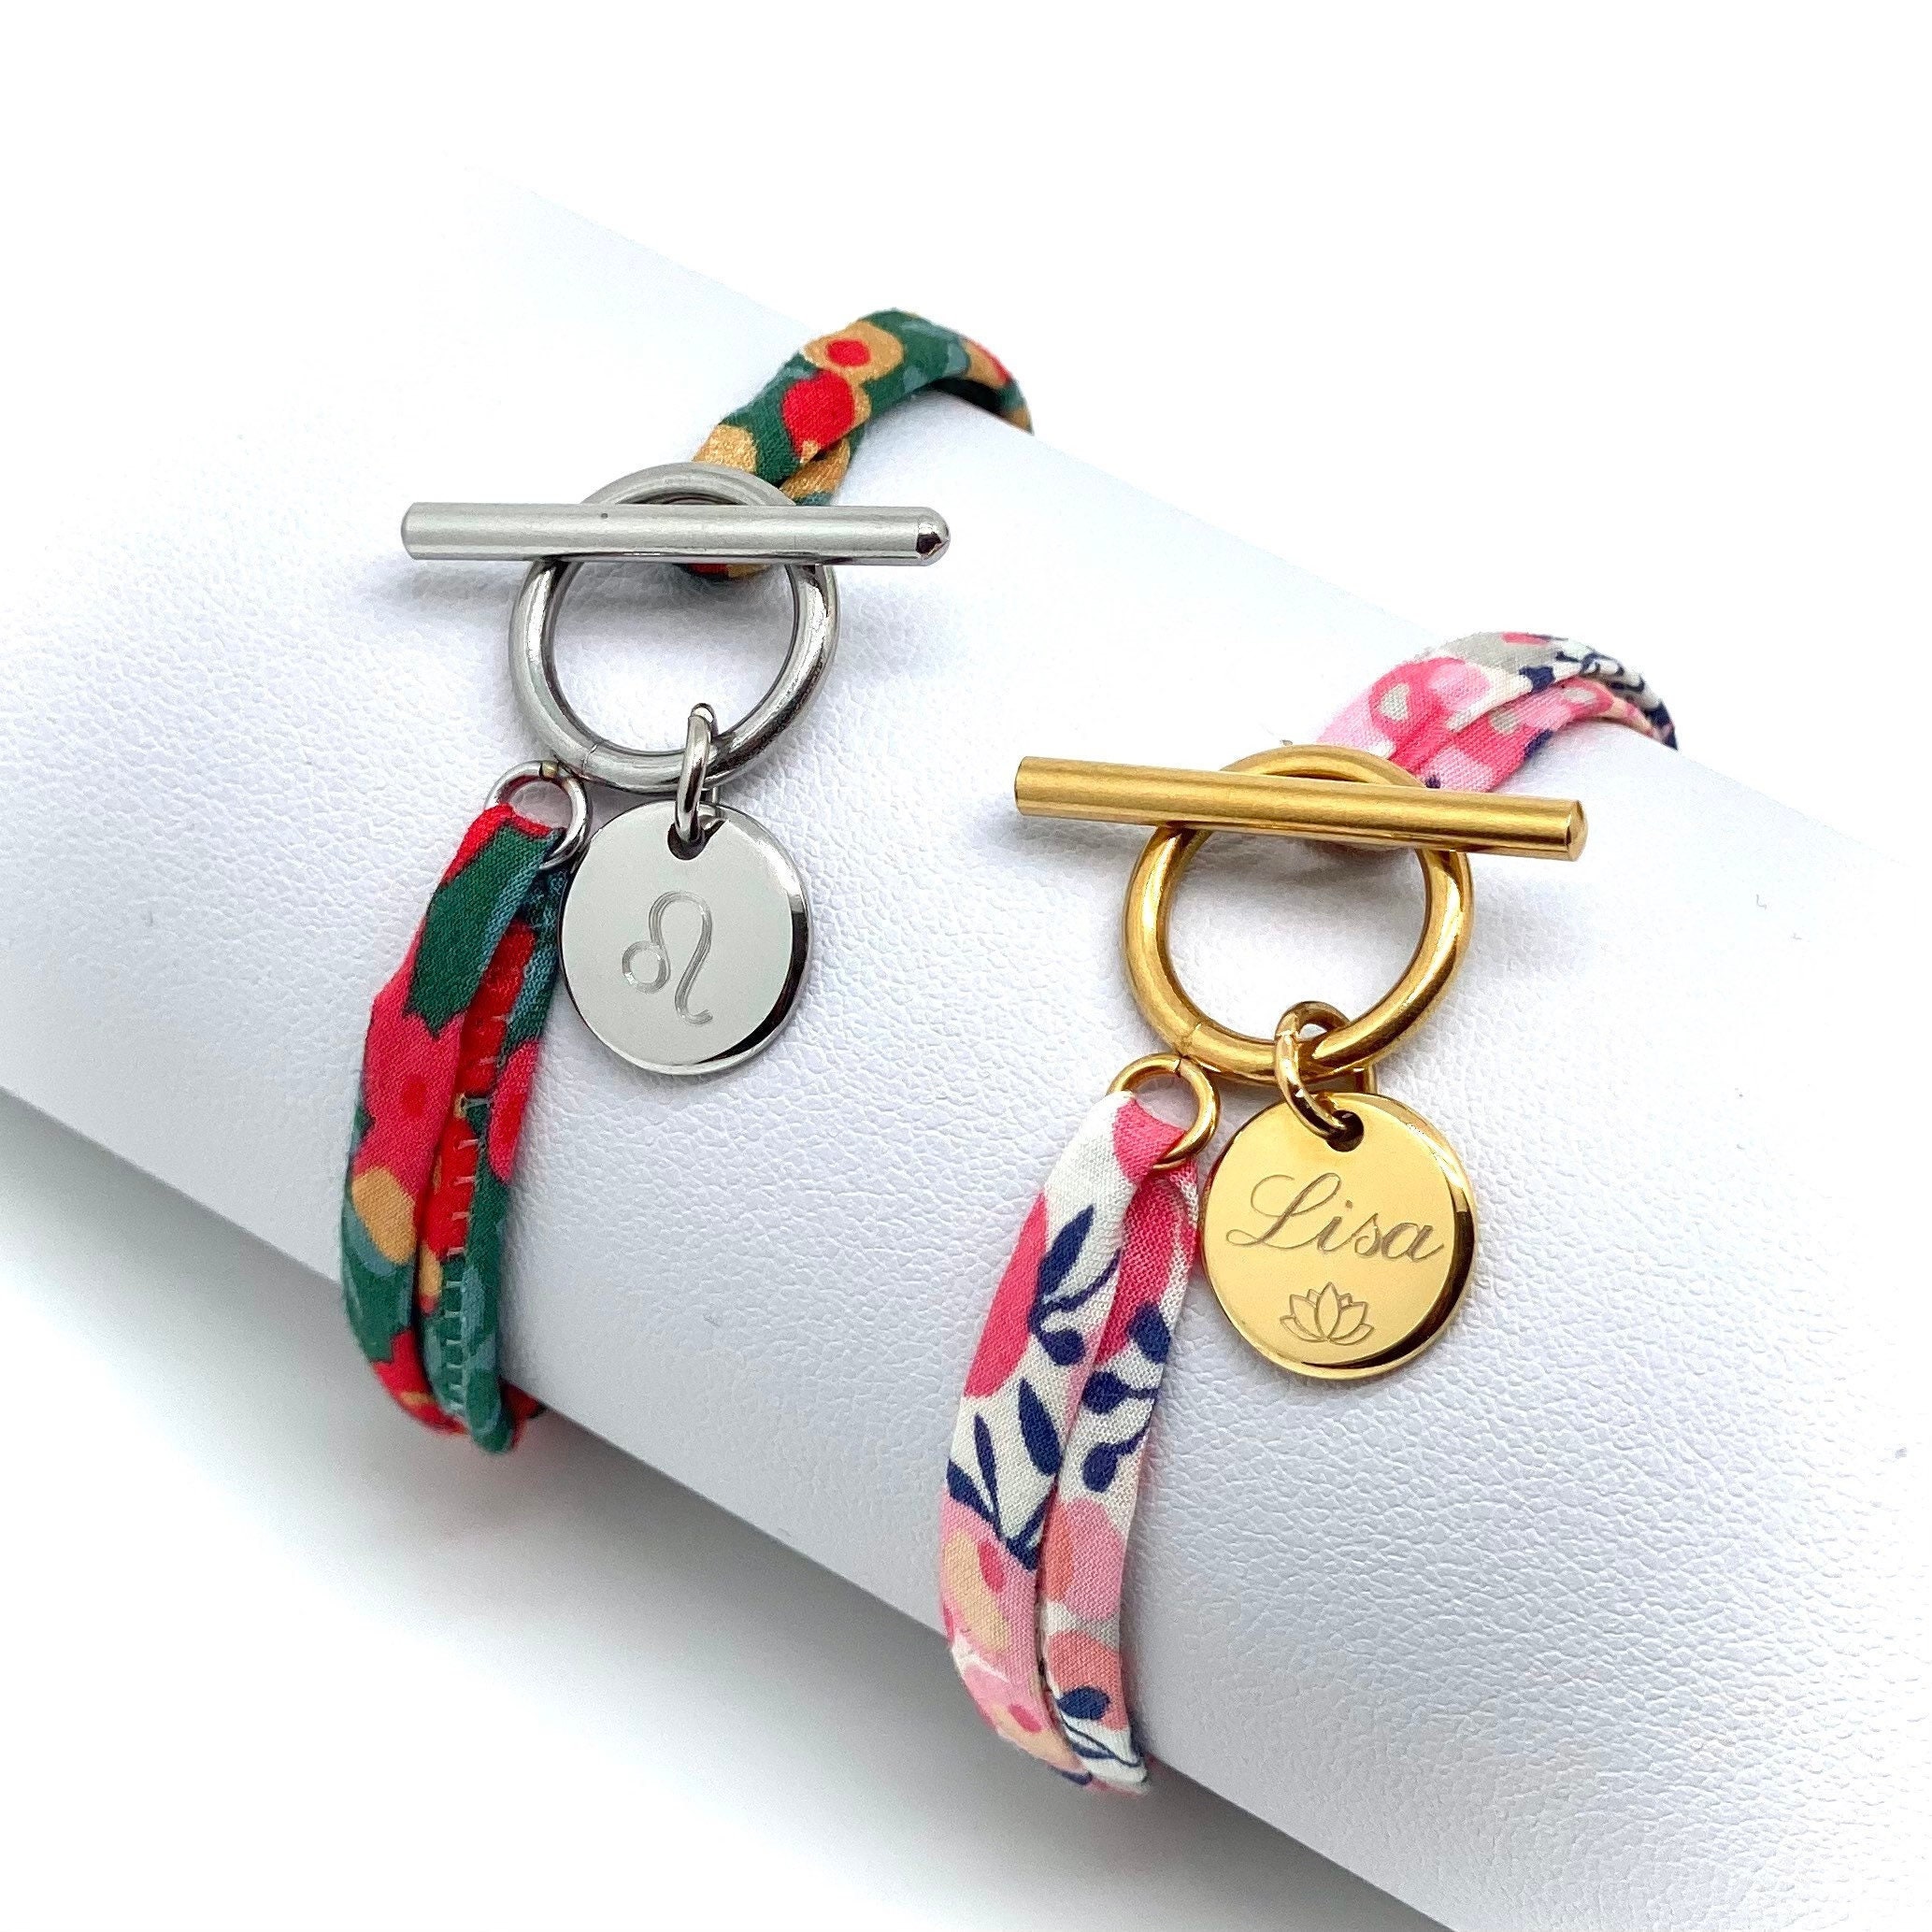 Personalised cord bracelet to engrave - steel - Petits Tresors